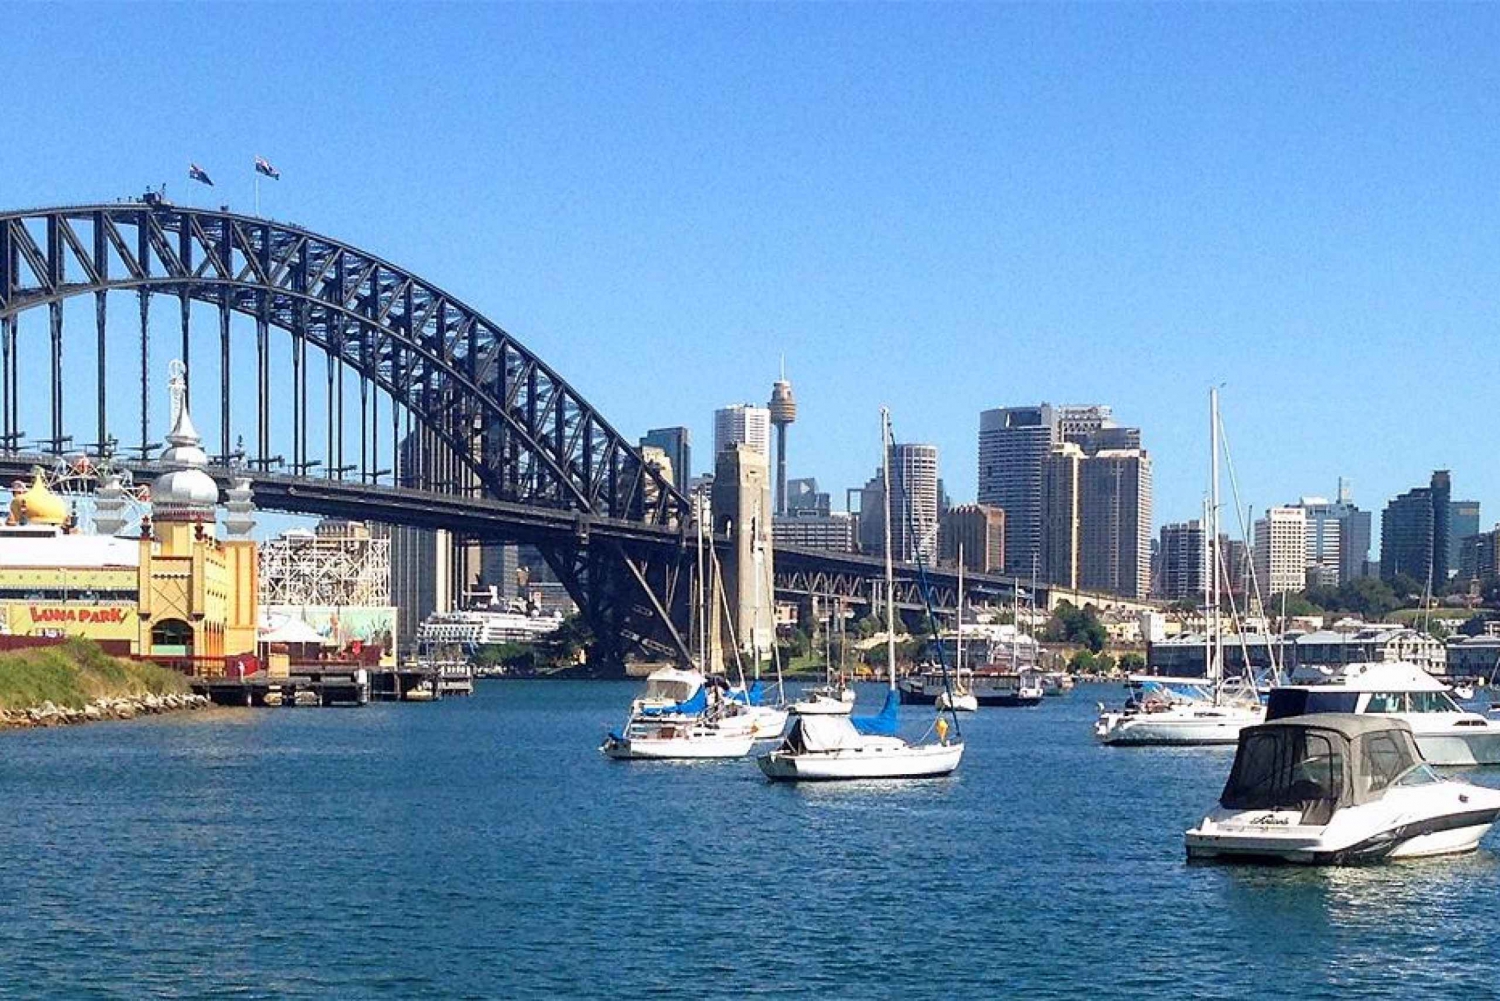 Sydney: Spacer wzdłuż wybrzeża portowego do Lavender Bay - audioprzewodnik